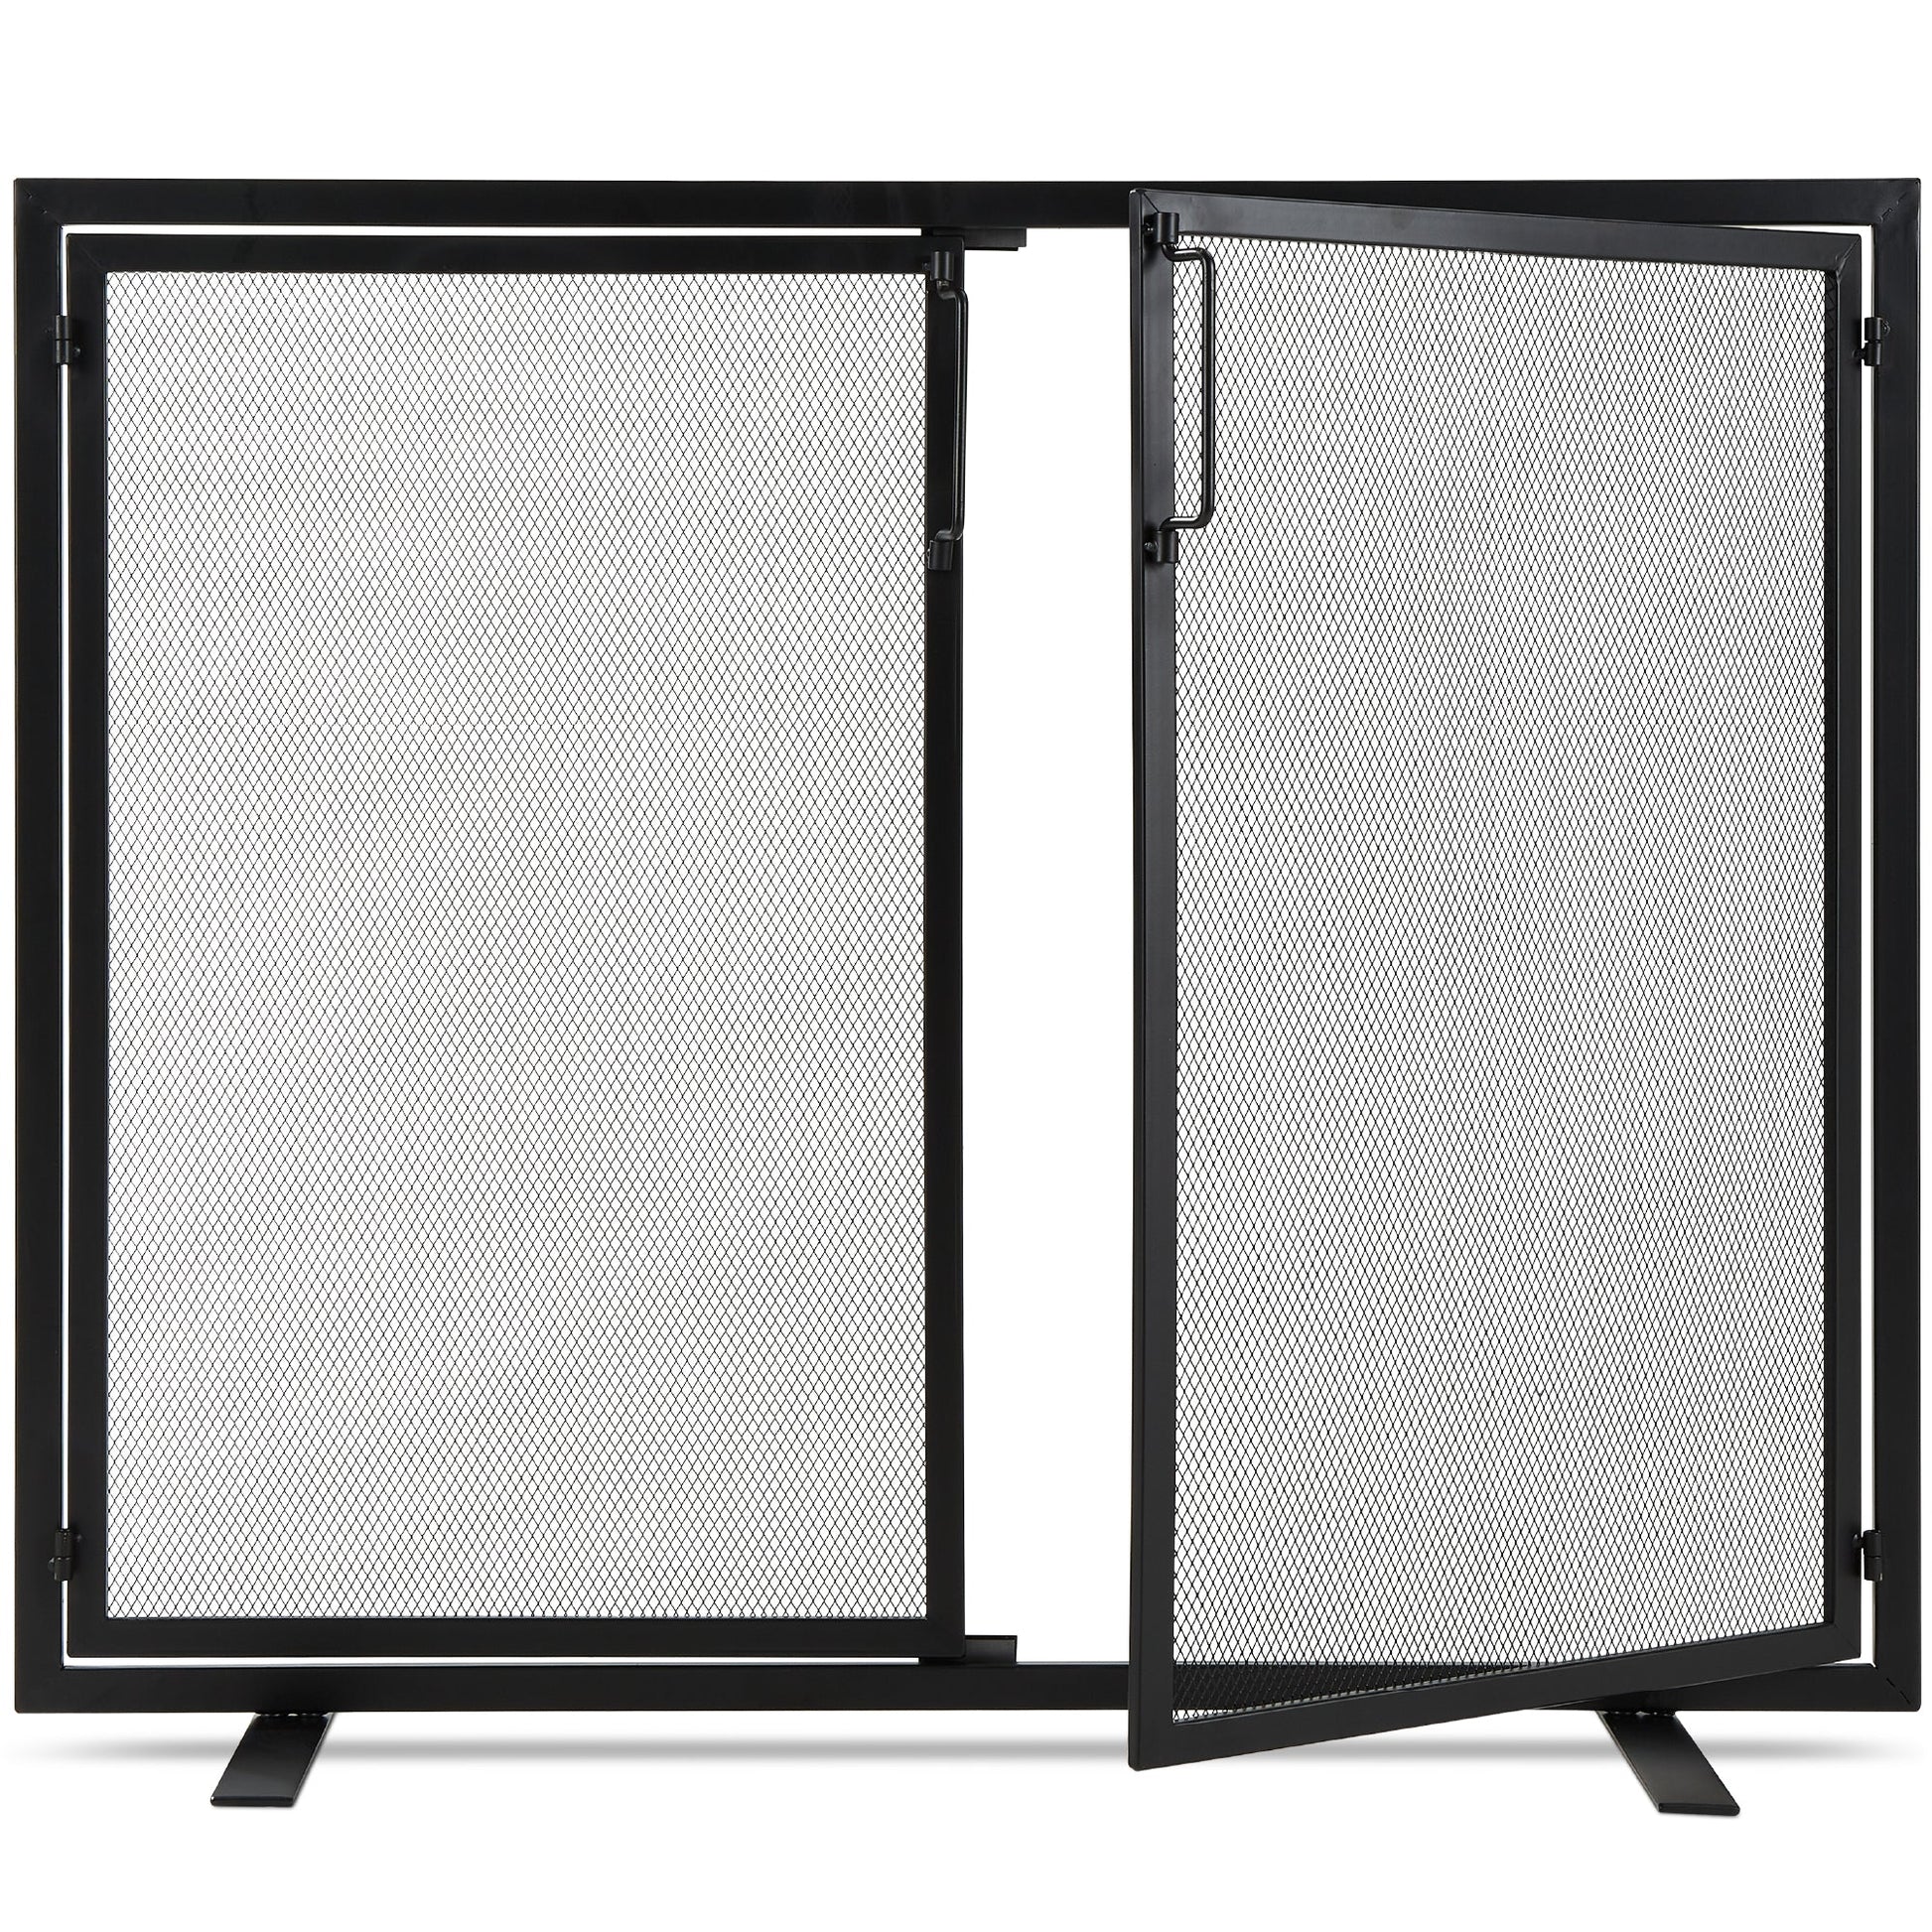 2-Door Wrought Iron Fireplace Screen w/ Magnetic Doors - 38.5x41in